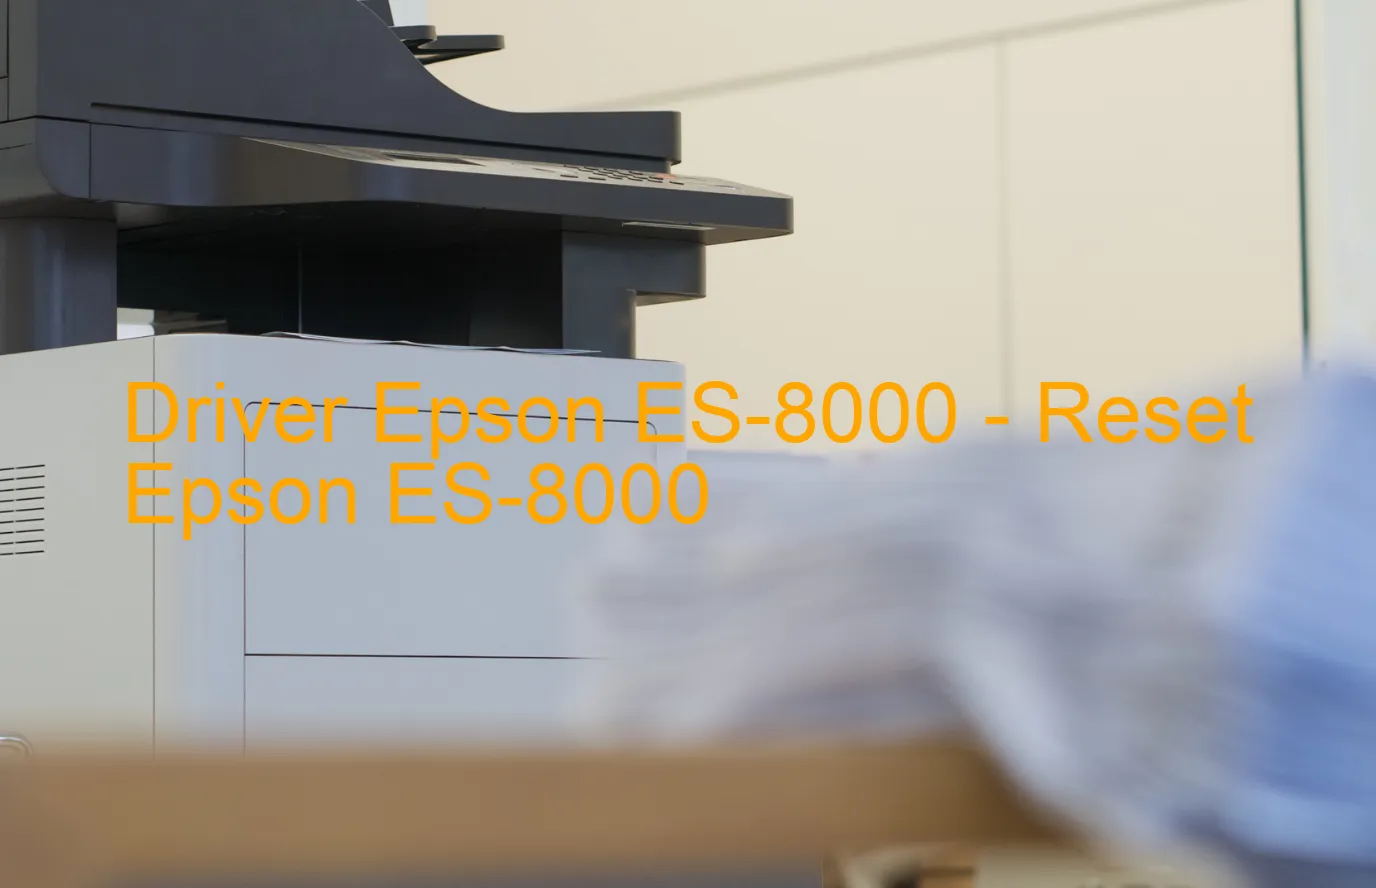 Epson ES-8000のドライバー、Epson ES-8000のリセットソフトウェア